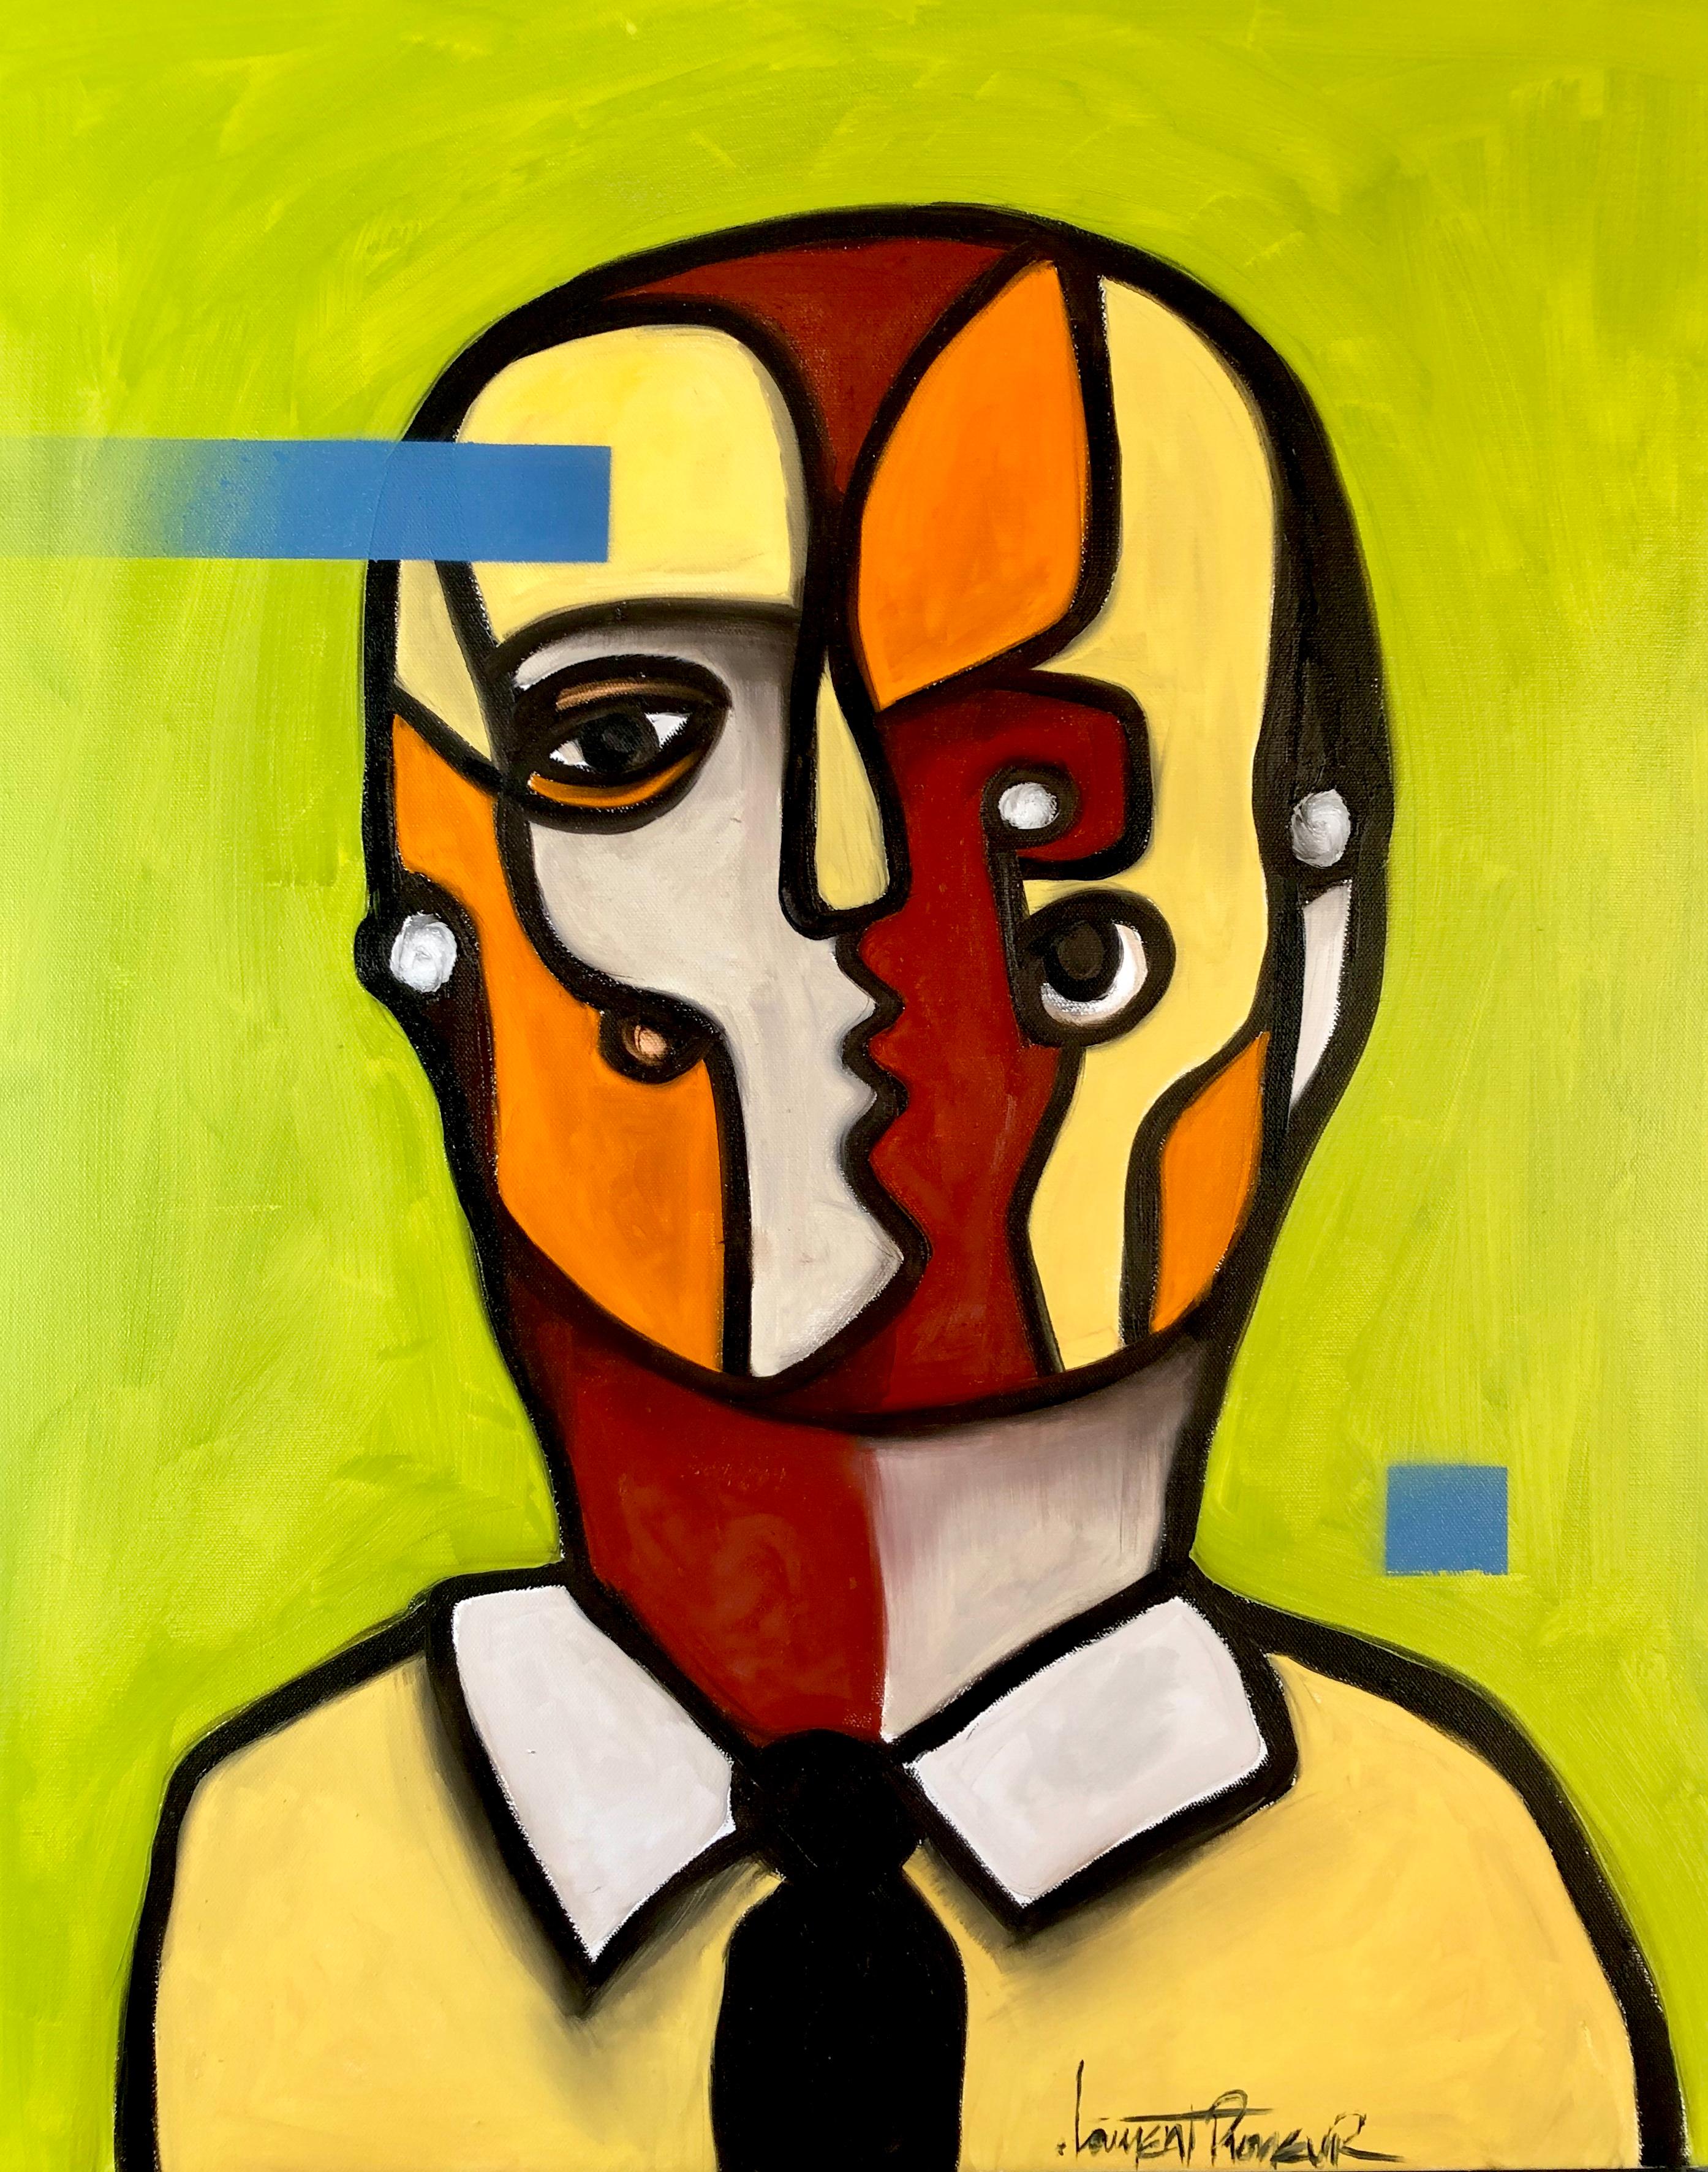 Laurent Proneur Portrait Painting – Split personality